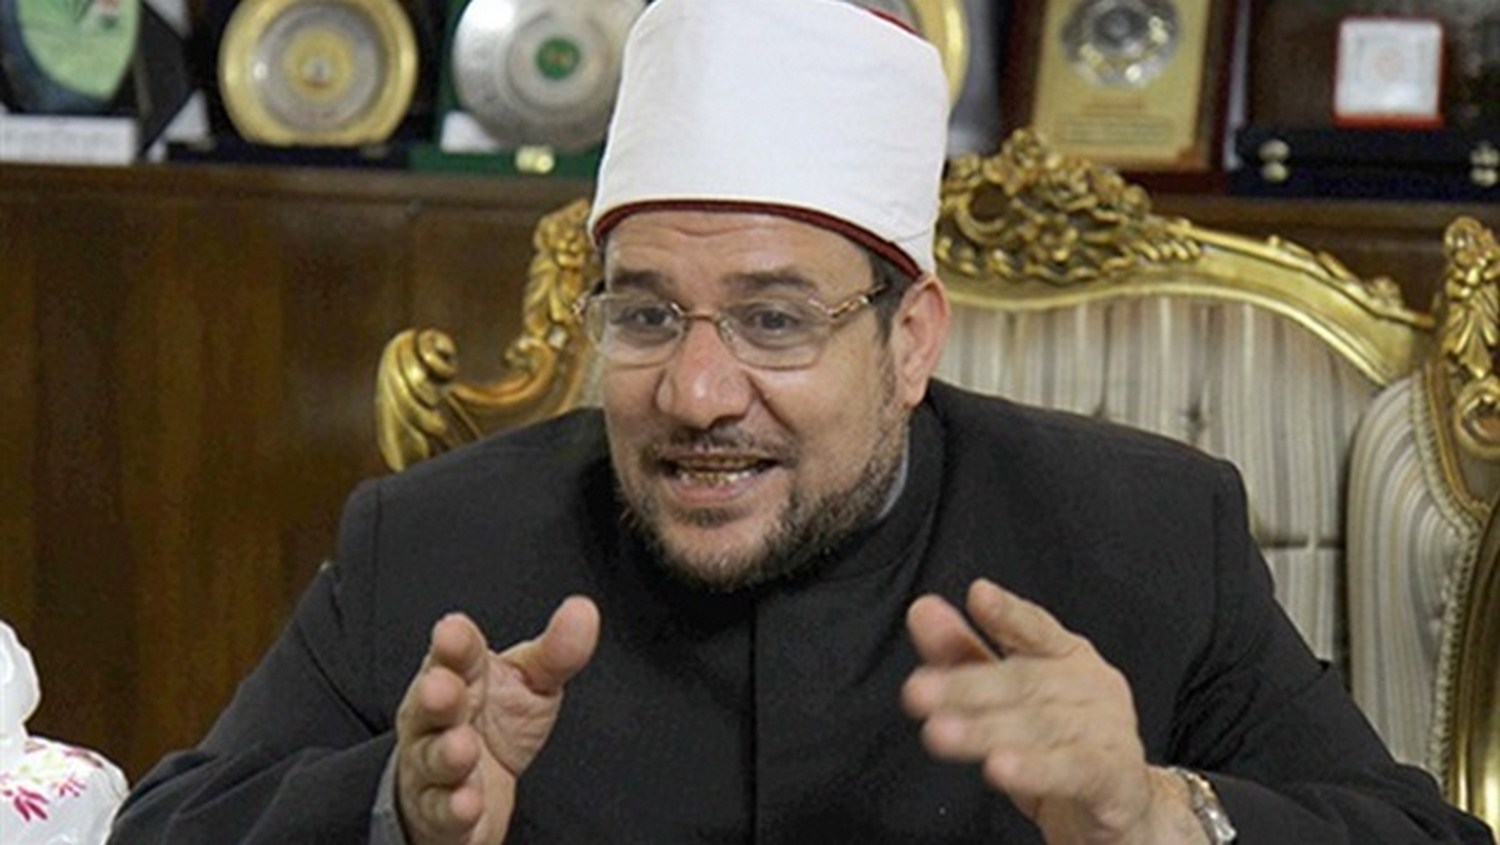 وزير الأوقاف مصر تحتاج إلى نقلة نوعية في فهم الخطاب الديني1688039163